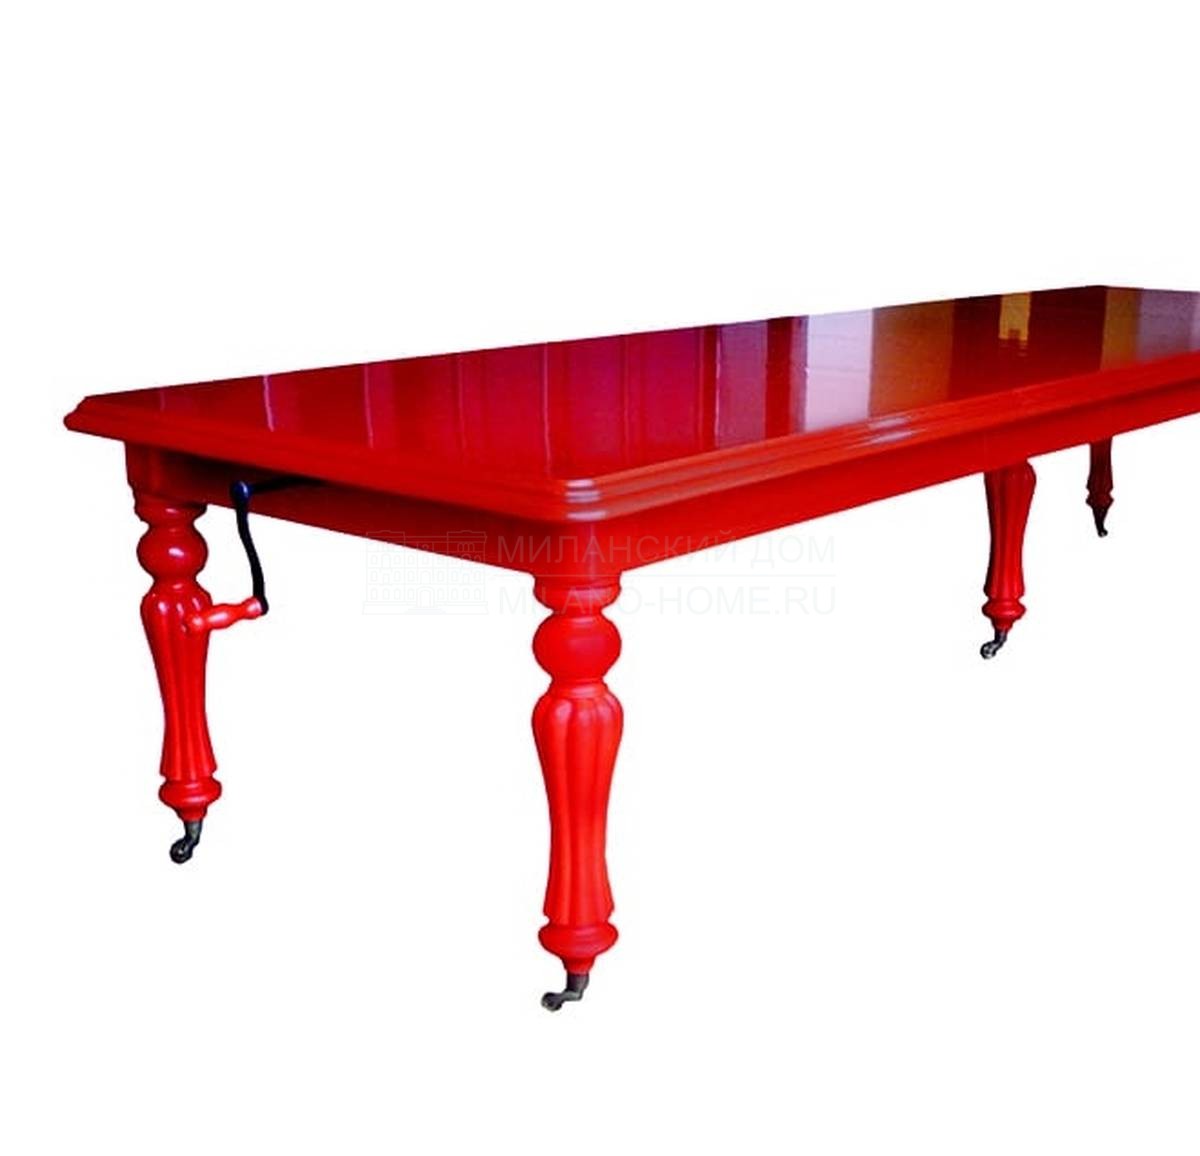 Обеденный стол Red gloss Conference table из Великобритании фабрики JIMMIE MARTIN